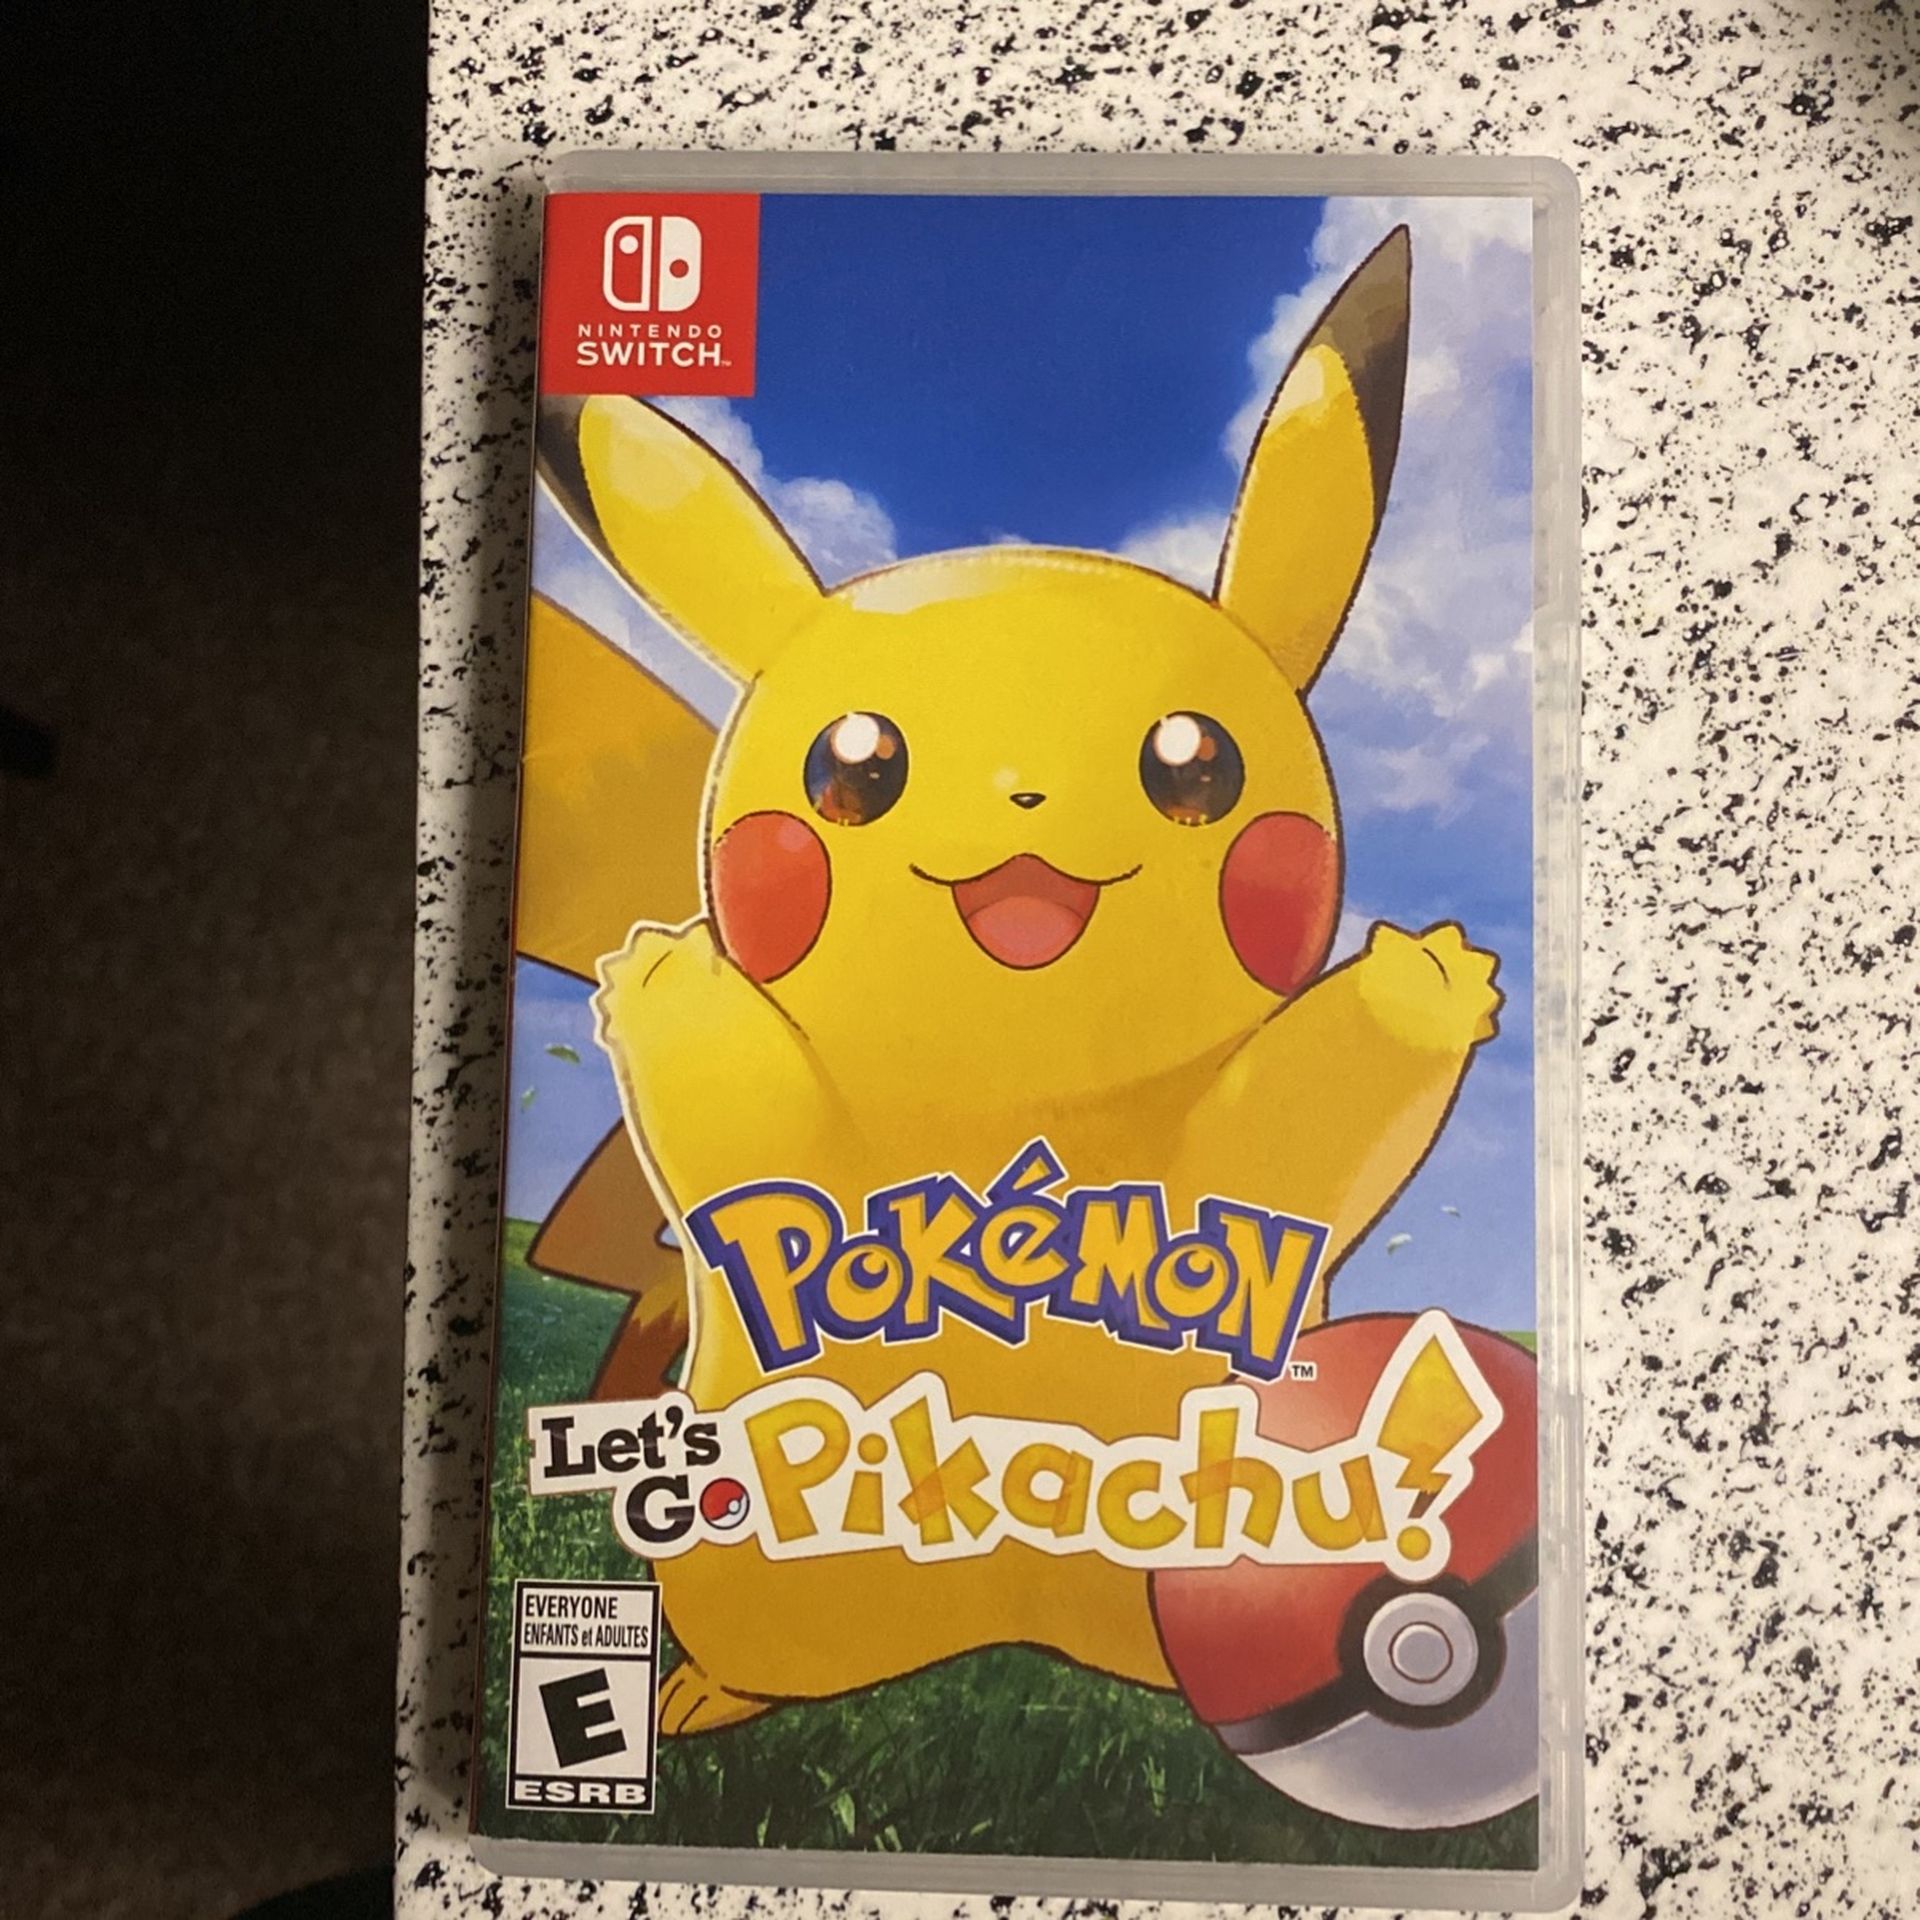 Pokémon Let Go Pikachu For The Switch